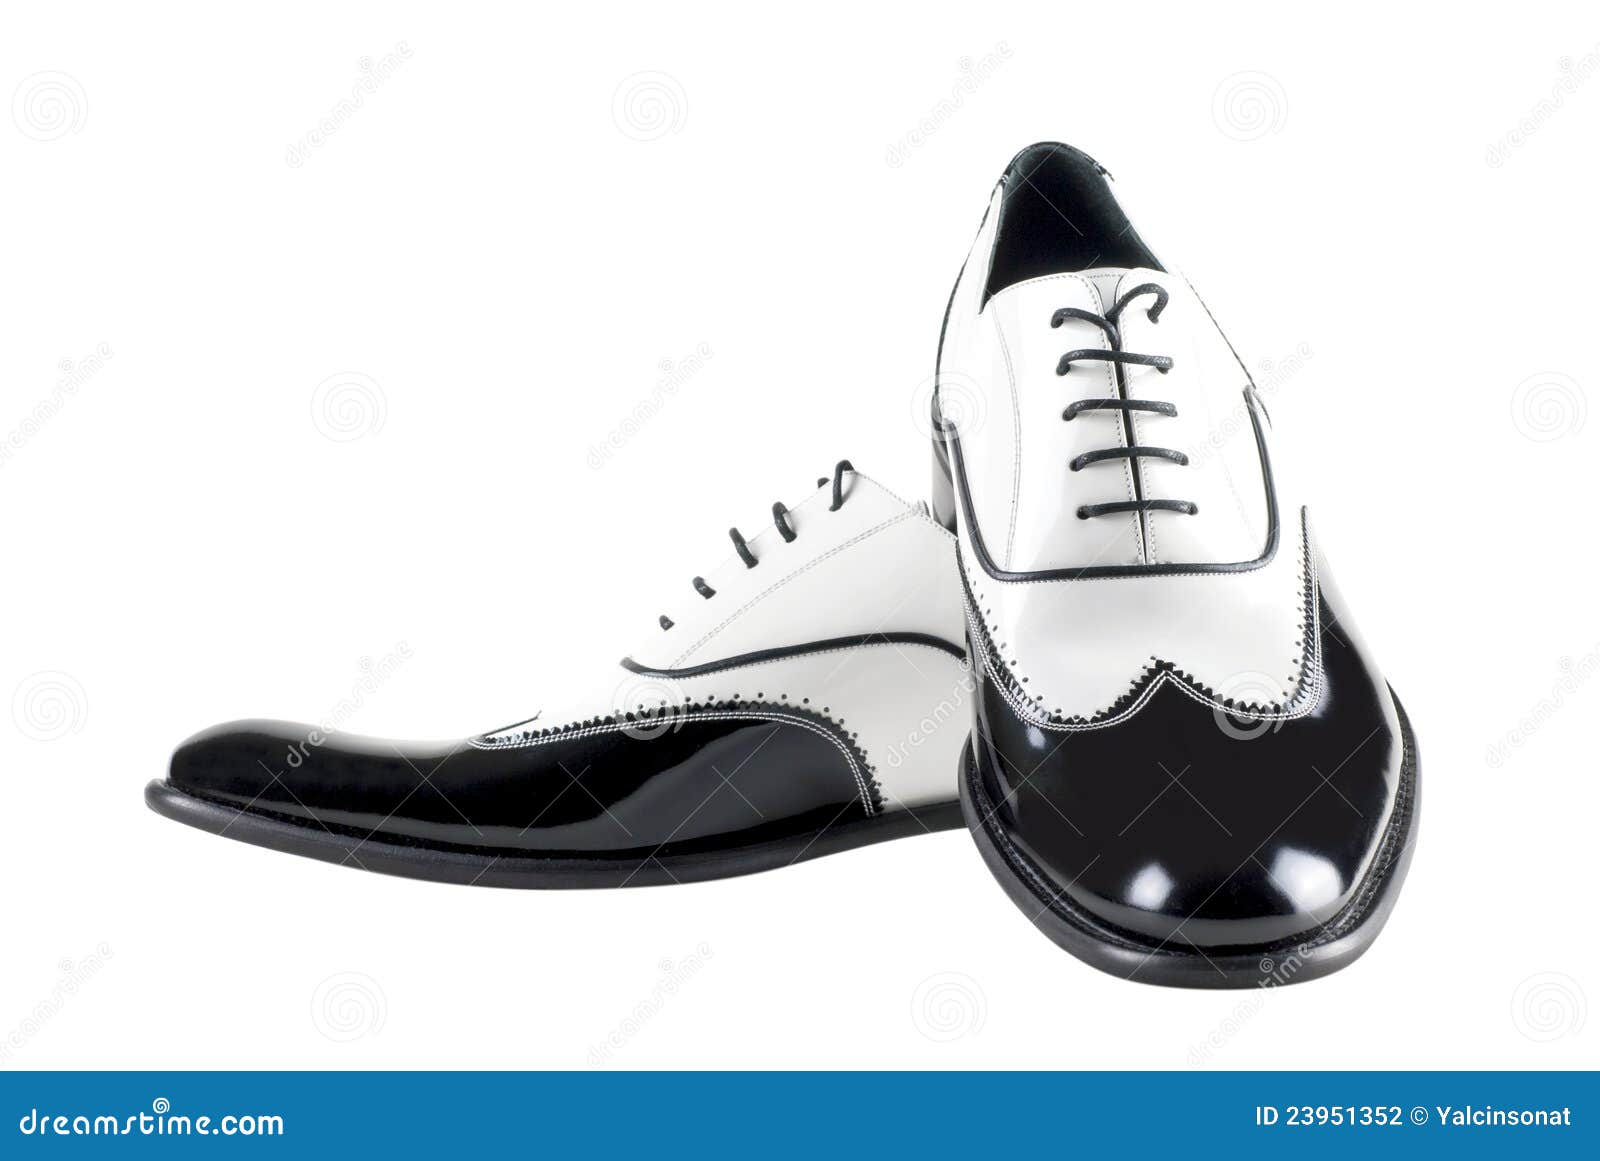 Mafia-Schuhe stockfoto. Bild von eleganz, schwarzes ...